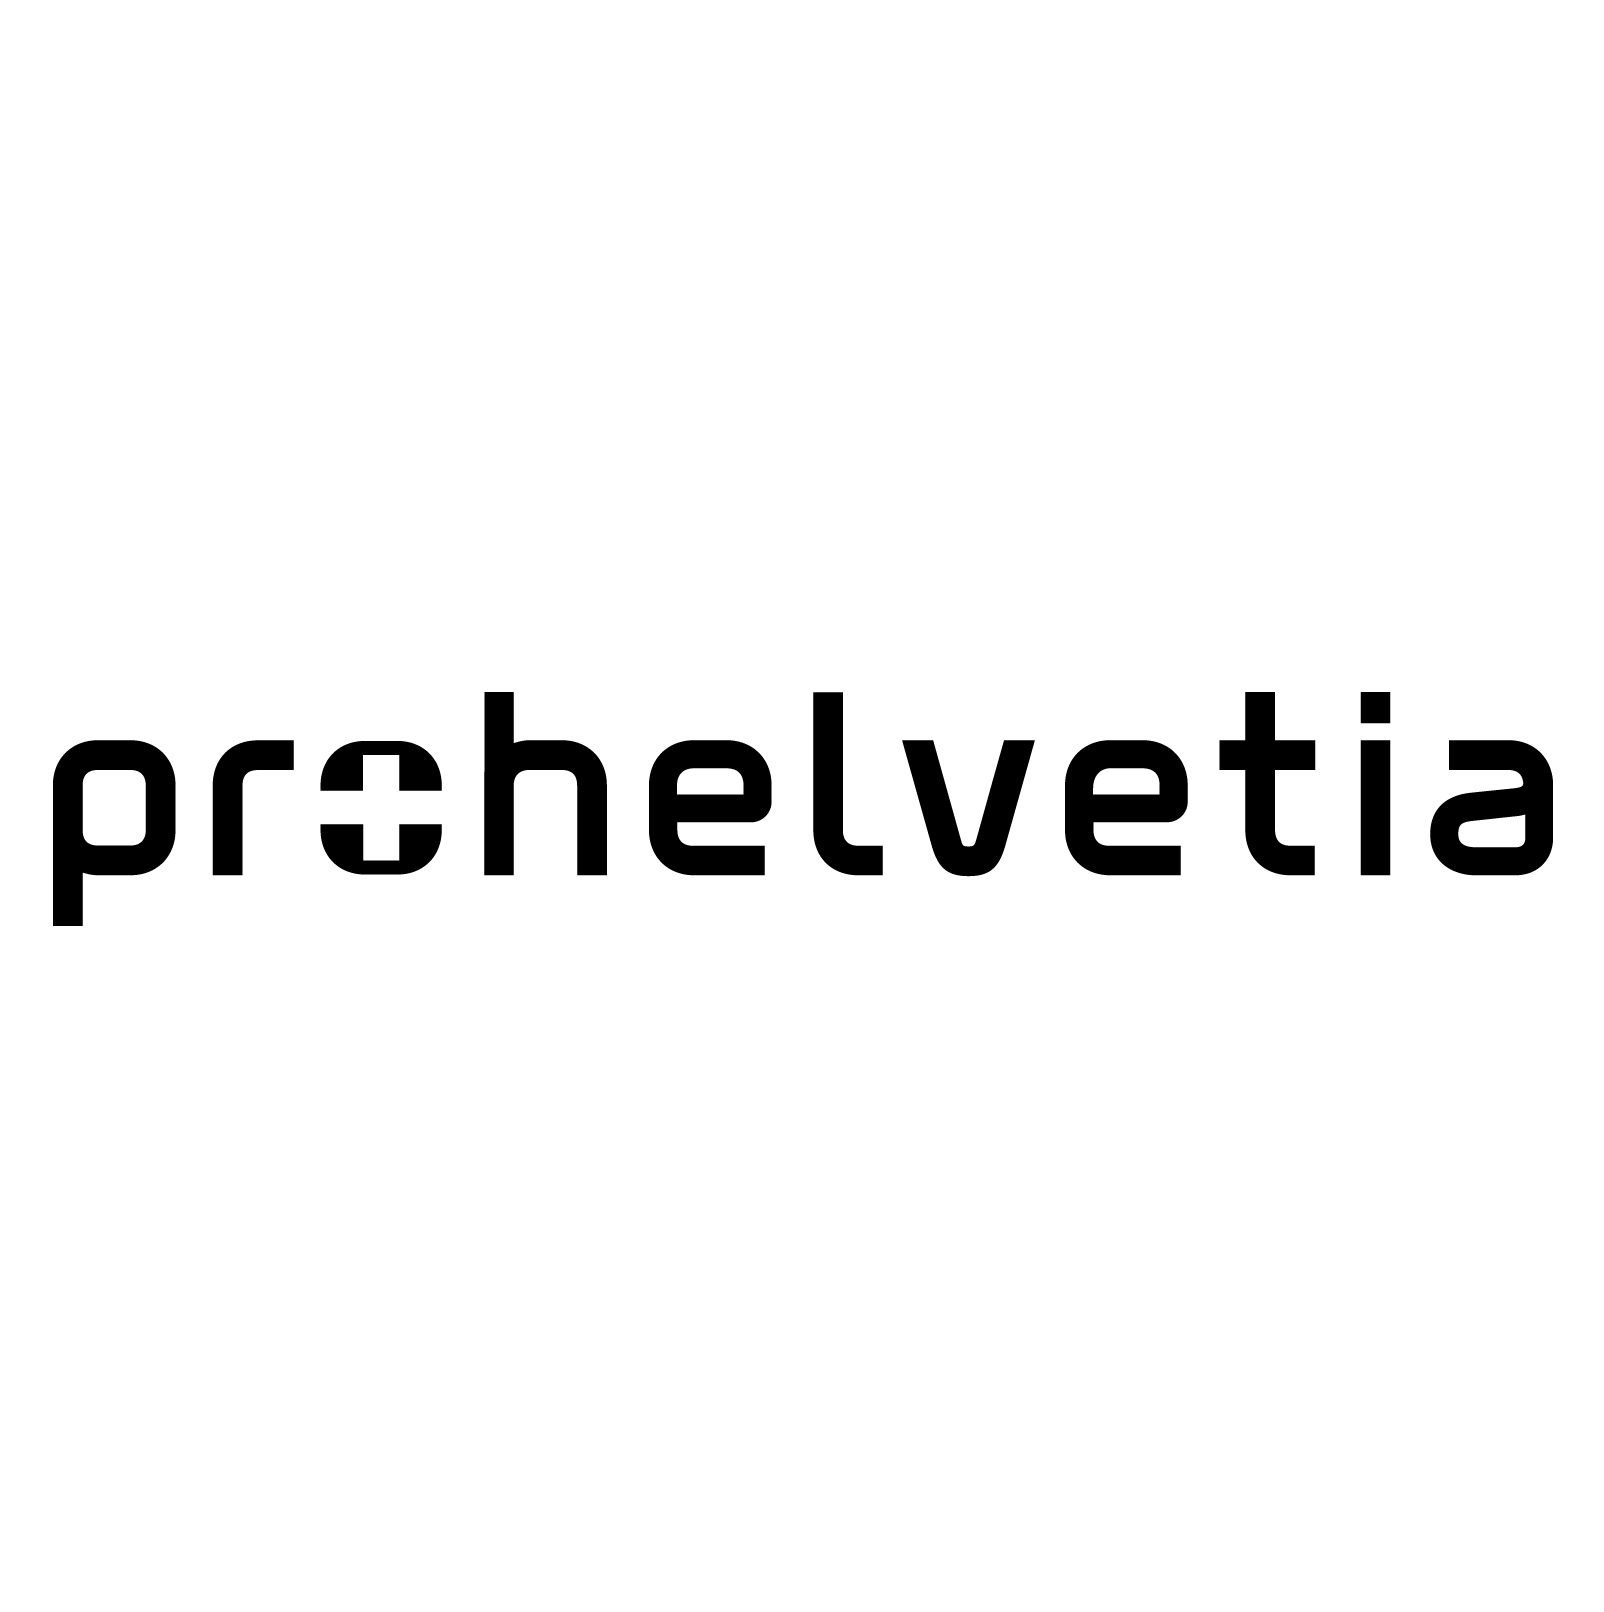 Pro Helvetia